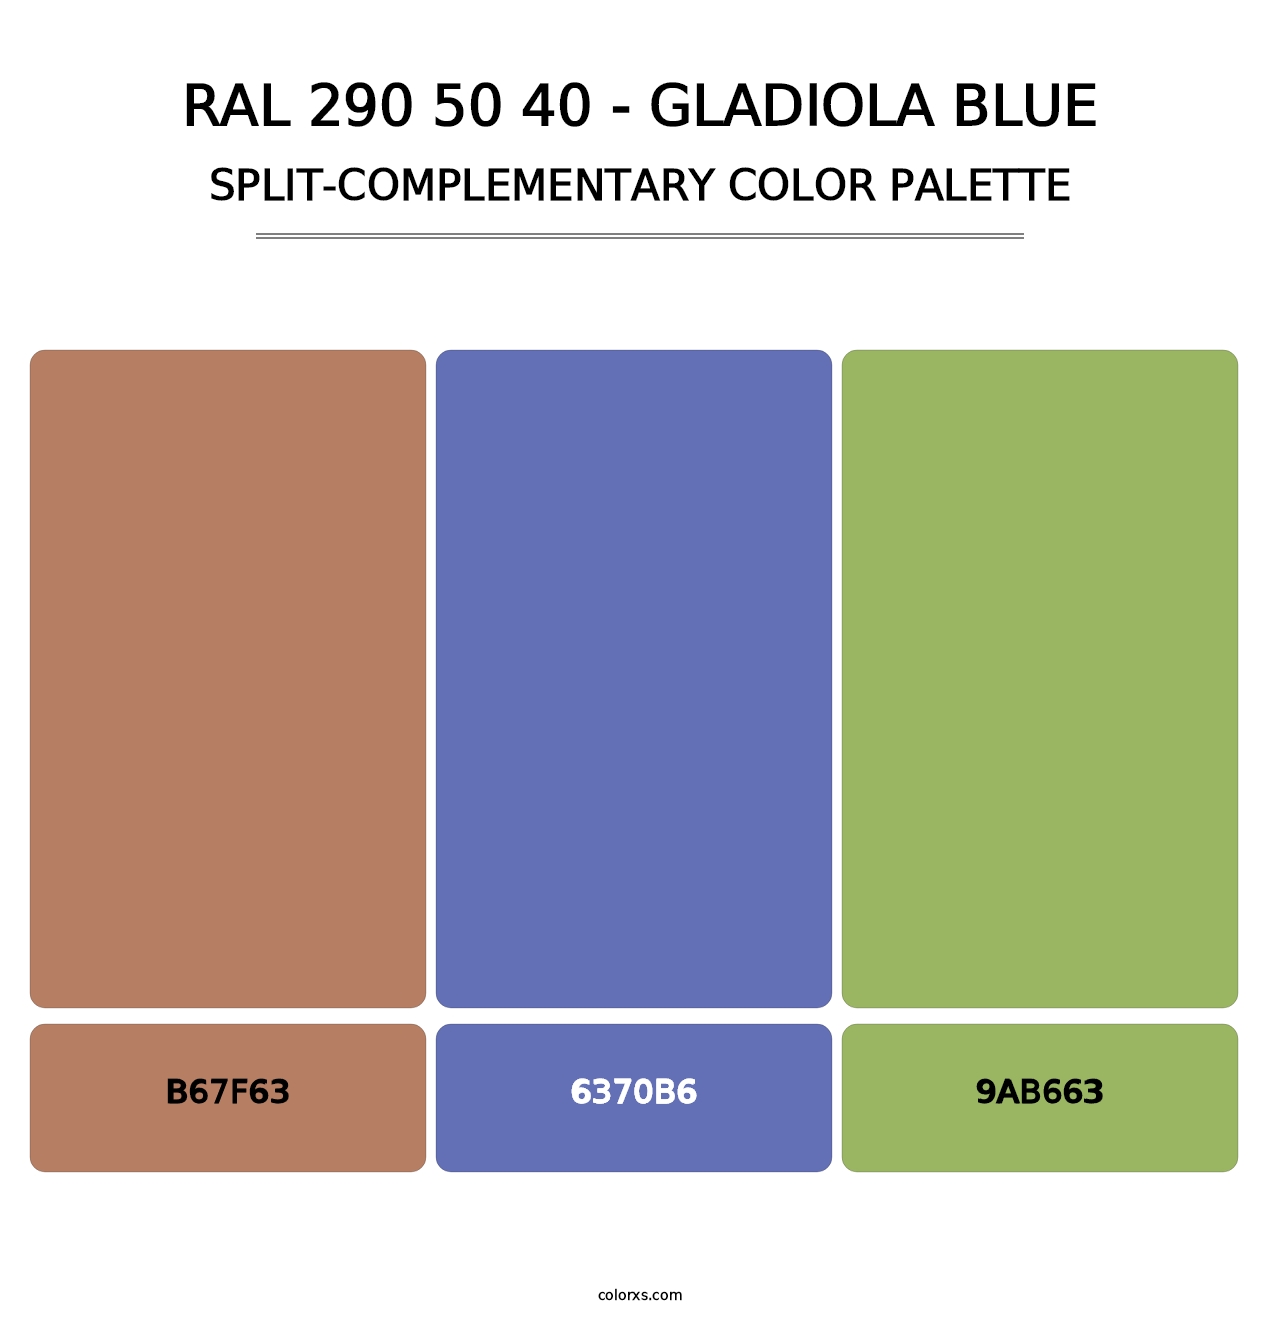 RAL 290 50 40 - Gladiola Blue - Split-Complementary Color Palette